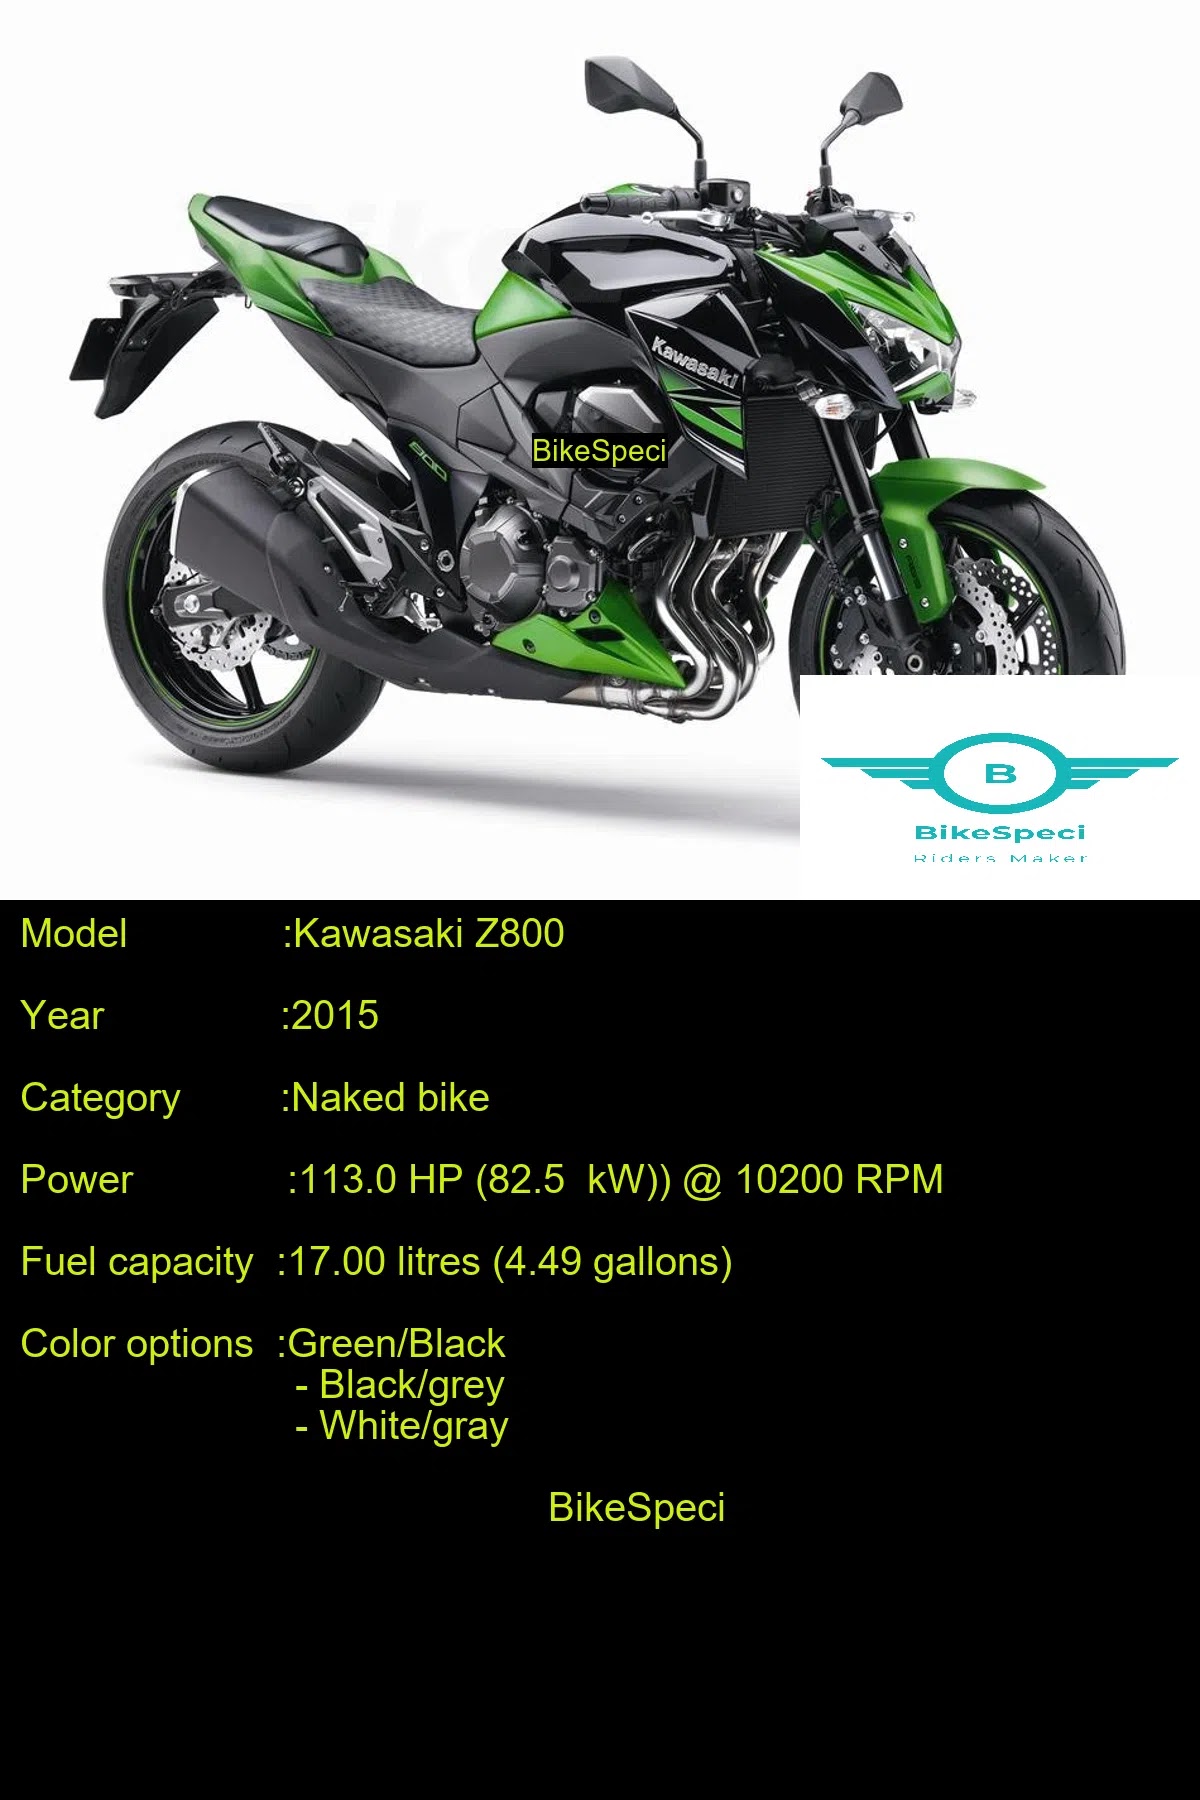 Kawasaki Z800 | Price, Photos, Millage, Speed, Colours etc | | Price, Photos, Speed, Colours etc.